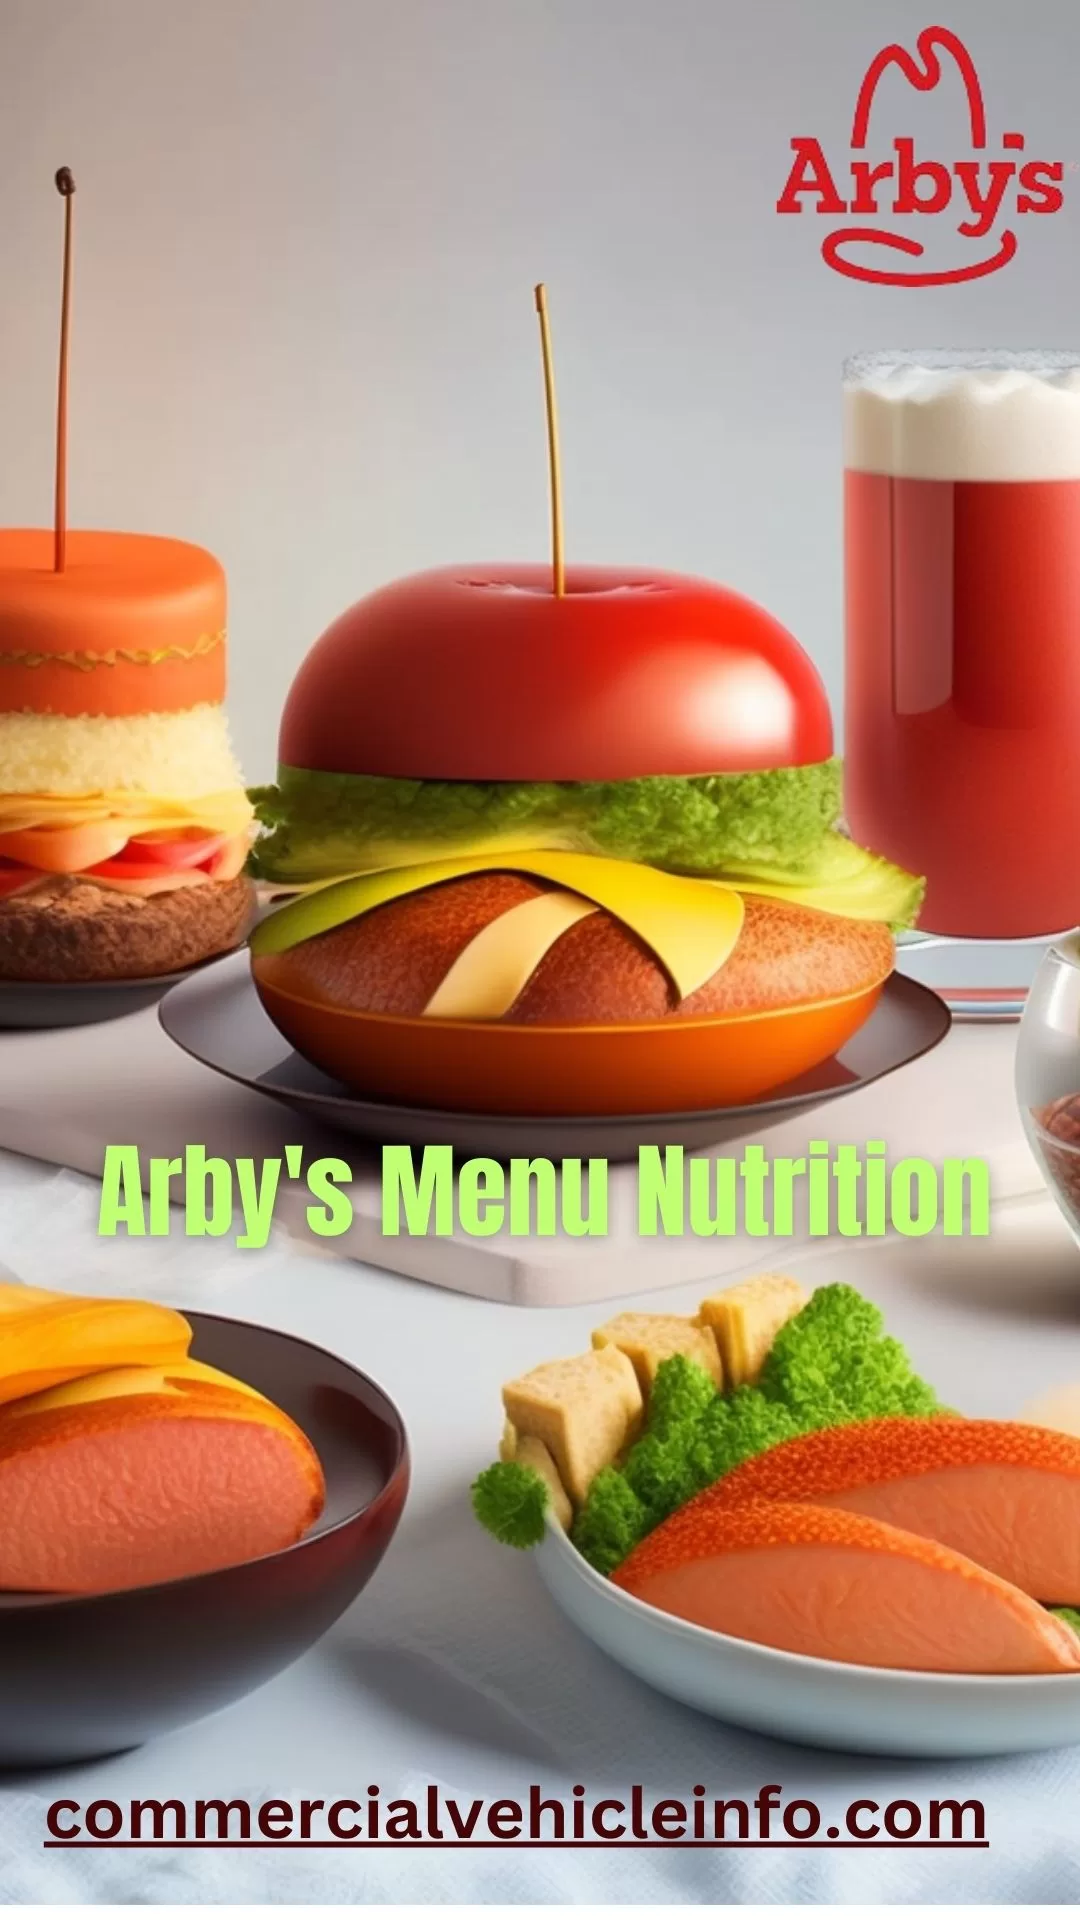 arby's menu nutrition